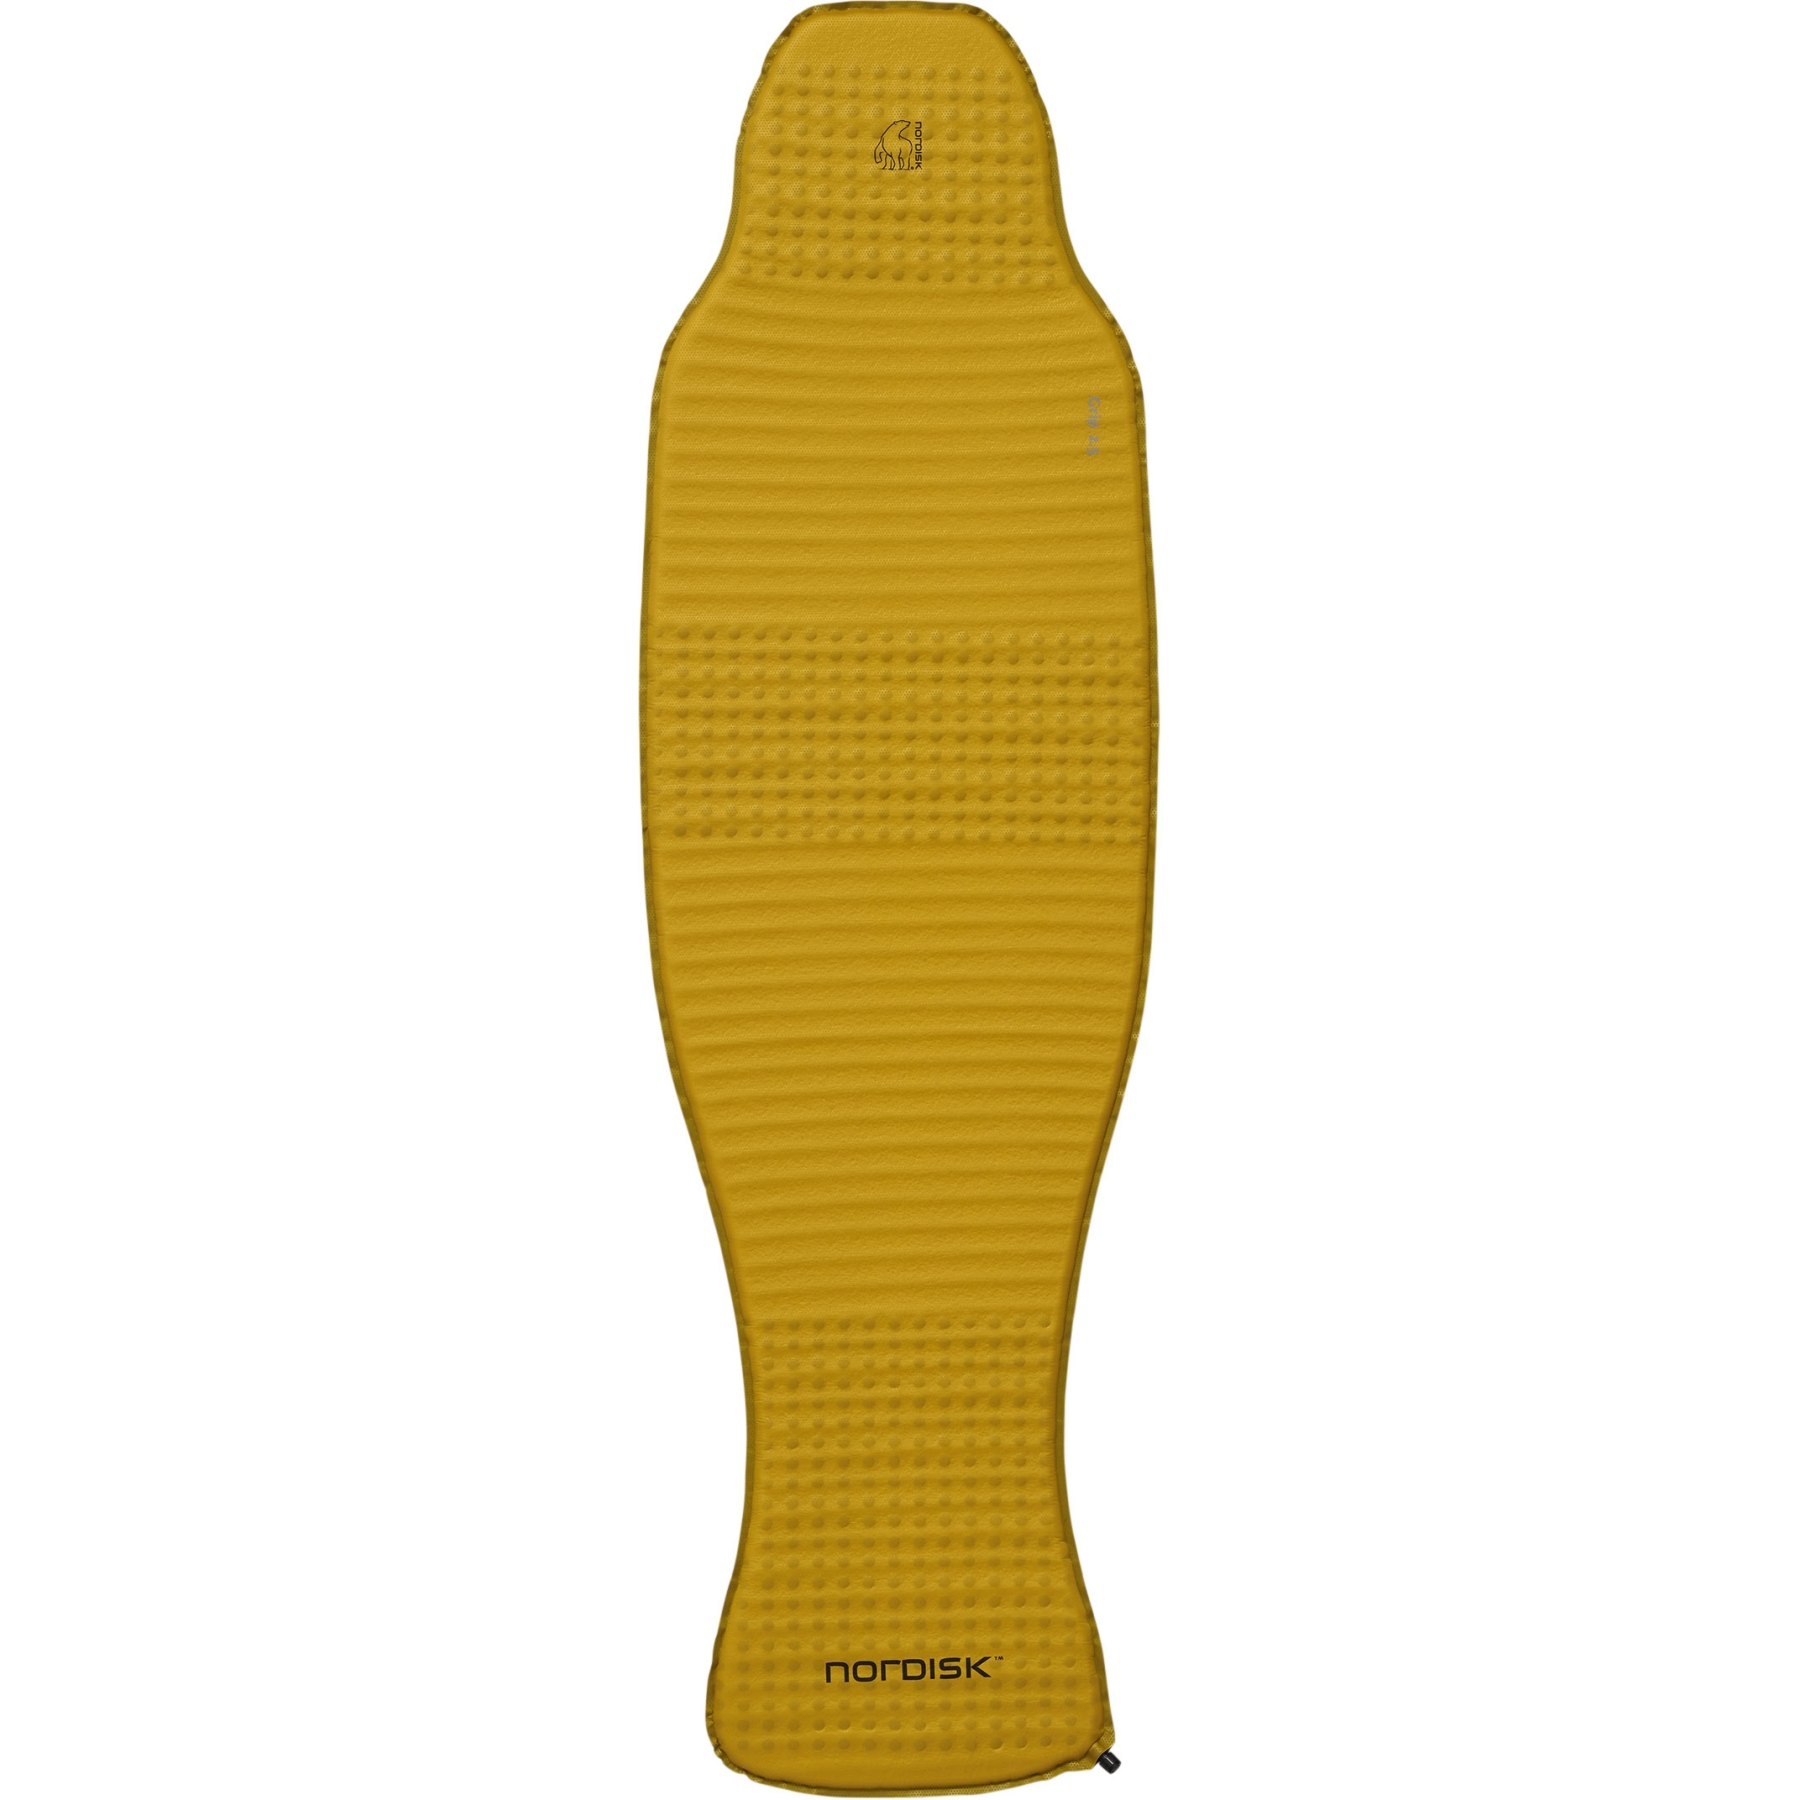 Produktbild von Nordisk Grip 2.5 Regular Isomatte - mustard yellow/black